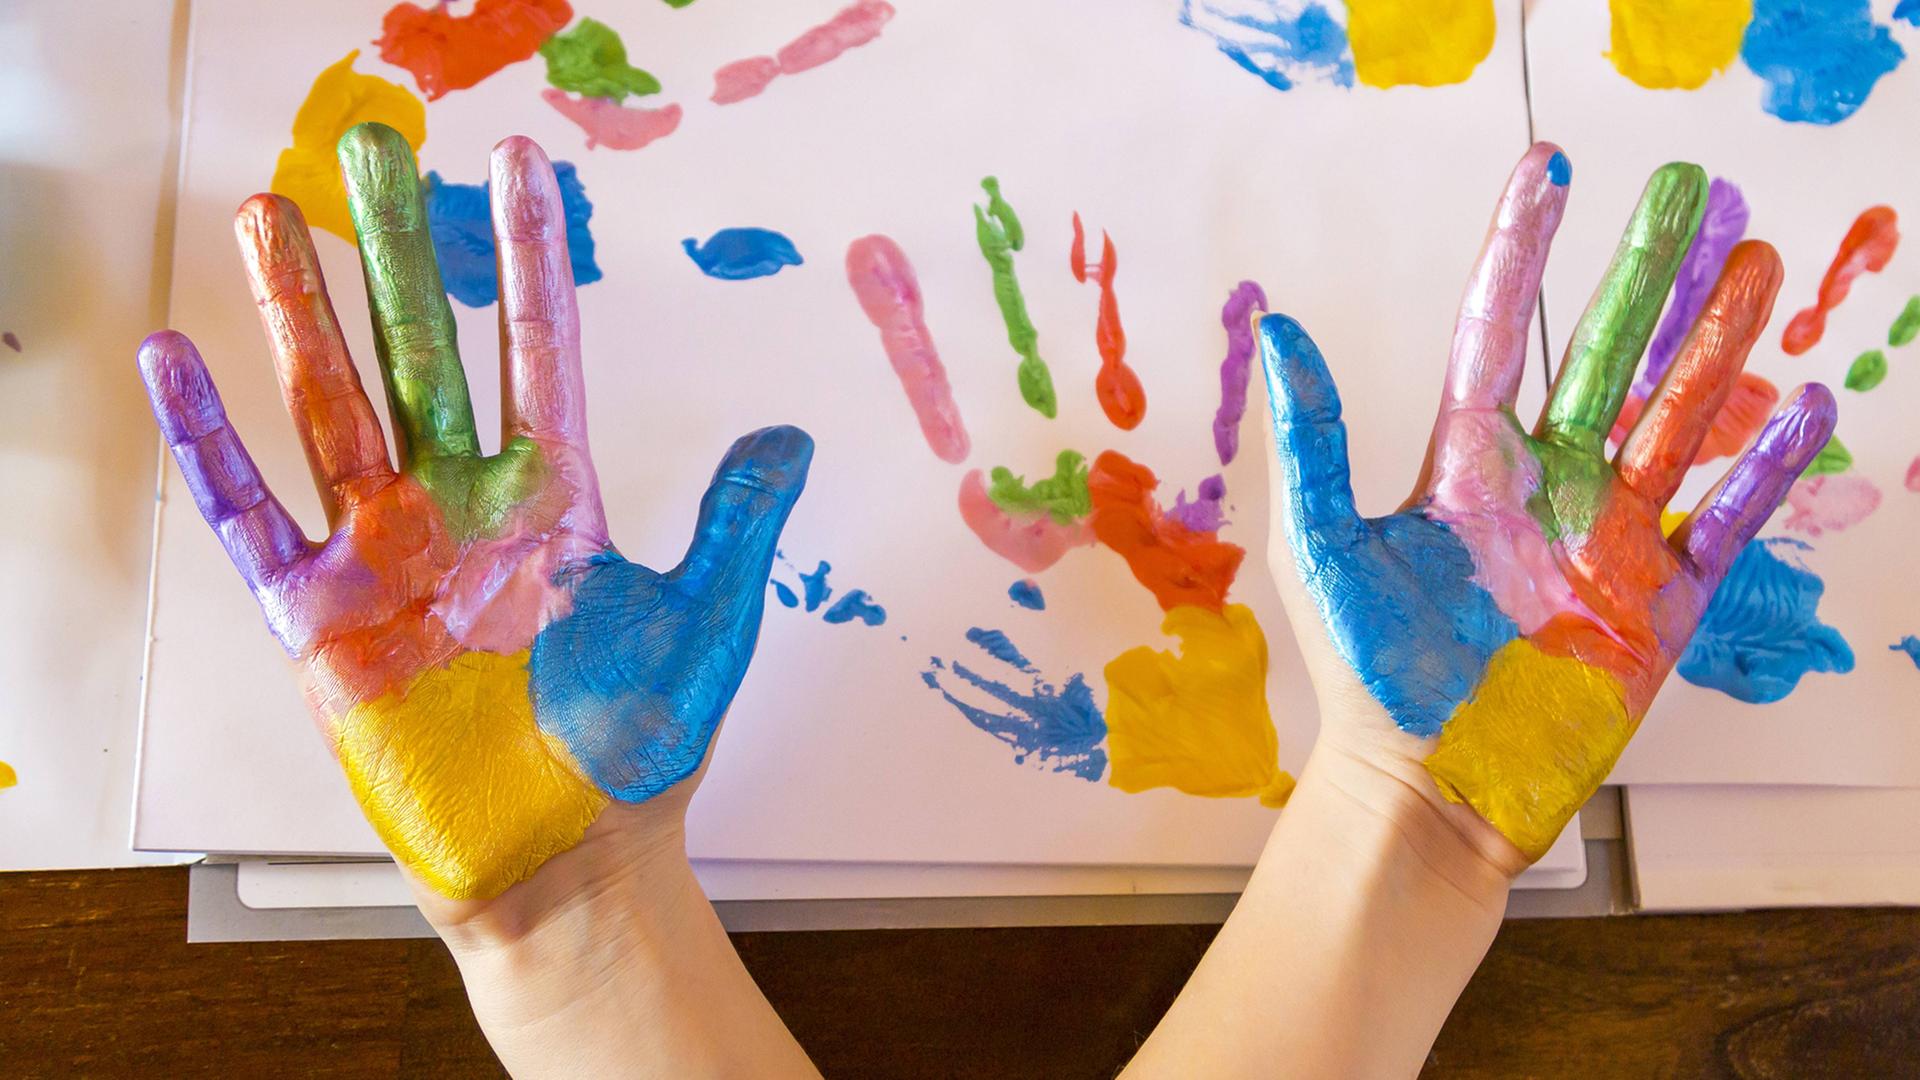 Zwei Hände mit sechs Farben bemalt werden in die Kamera gehalten, im Hintergrund Papier mit den Abdrücken der Hände.